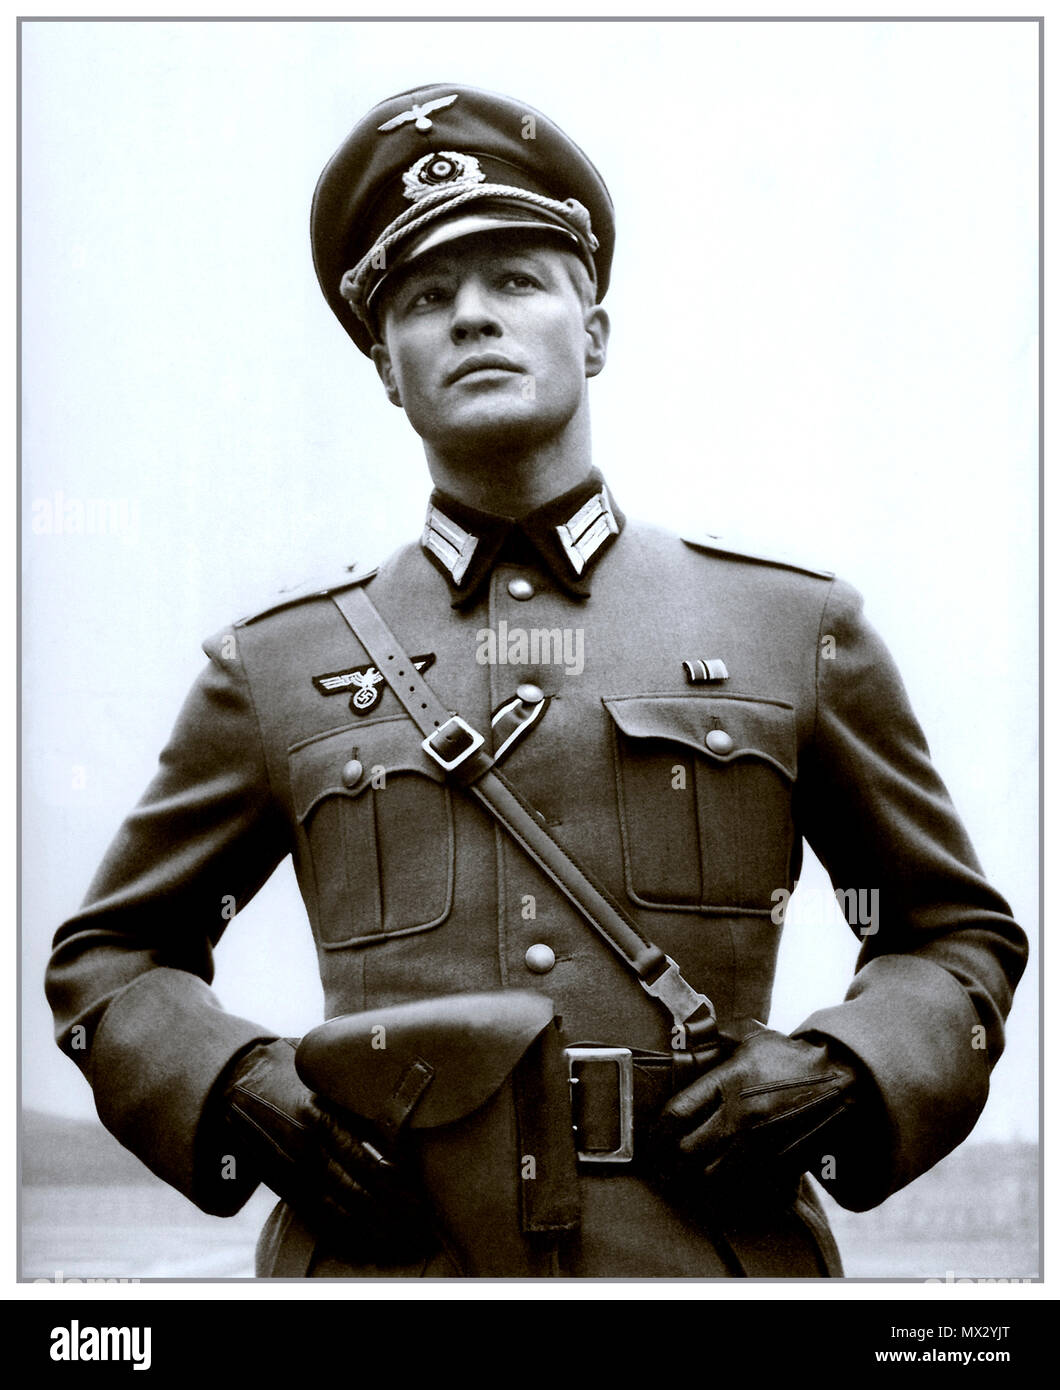 Vintage B&W película sigue la imagen de Marlon Brando en uniforme militar nazi que protagonizan los leoncillos 1958 20º Century Fox Film película dirigida por Edward Dmytryk American-Canadian director de cine Foto de stock